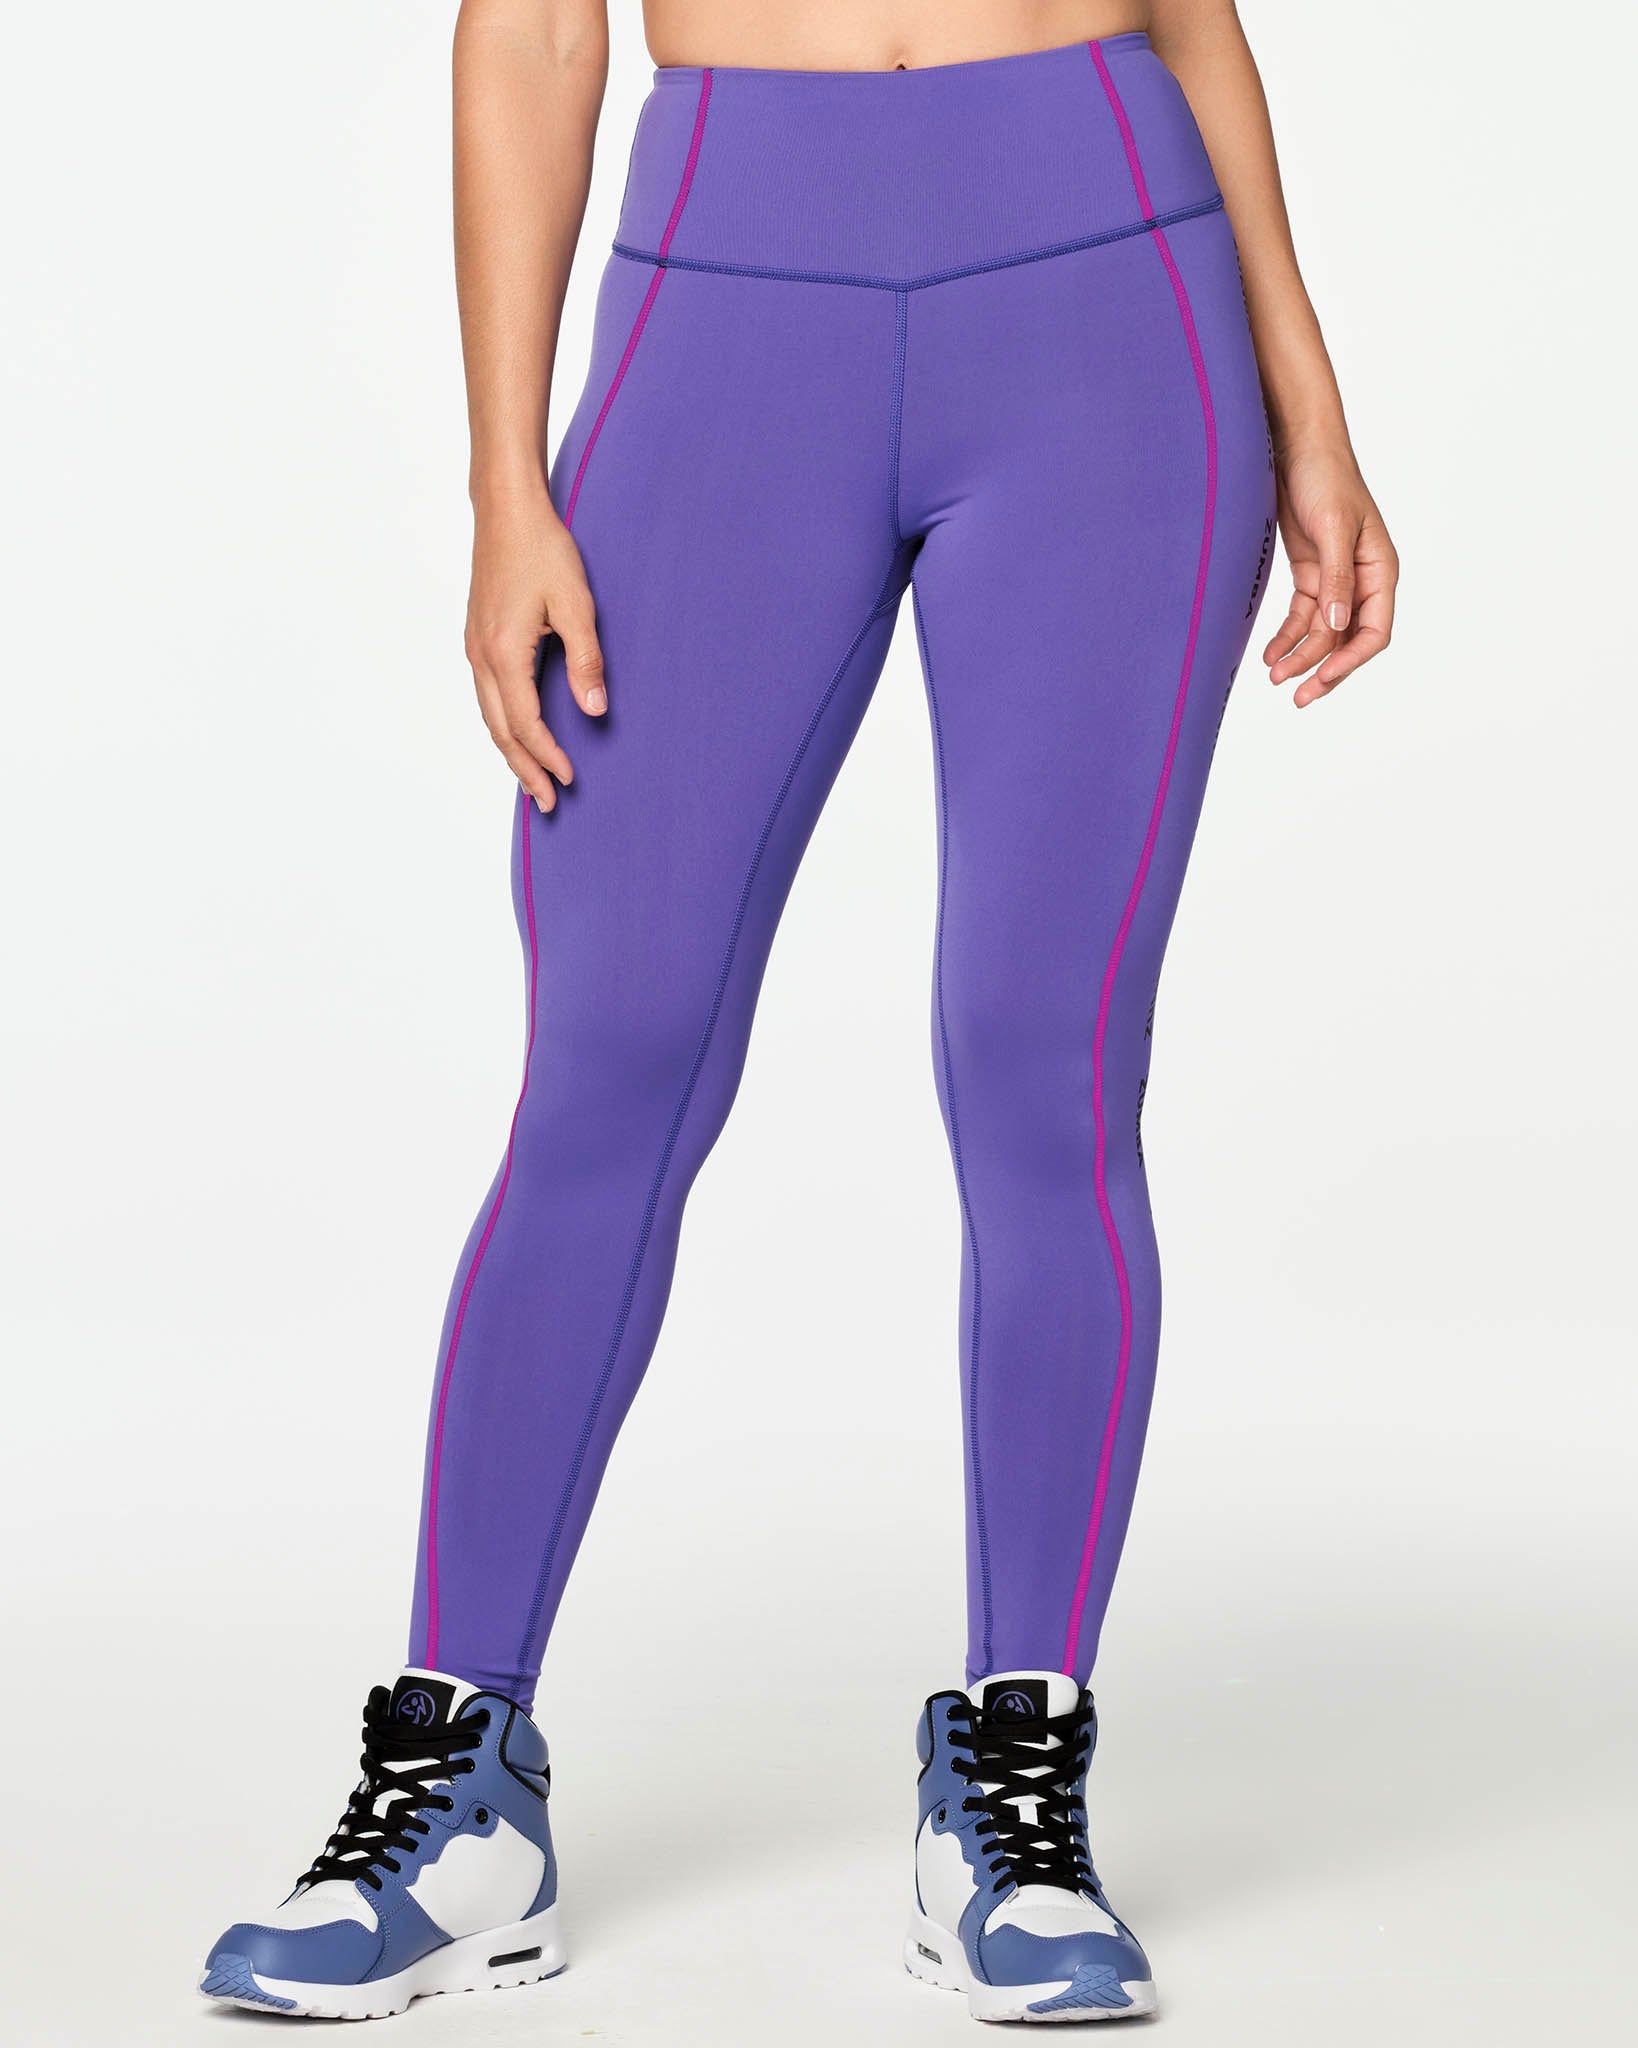 Nebula Serisi joyastyle.com #tayt #leggings #pilates #yoga #fitness #zumba  #sportswear